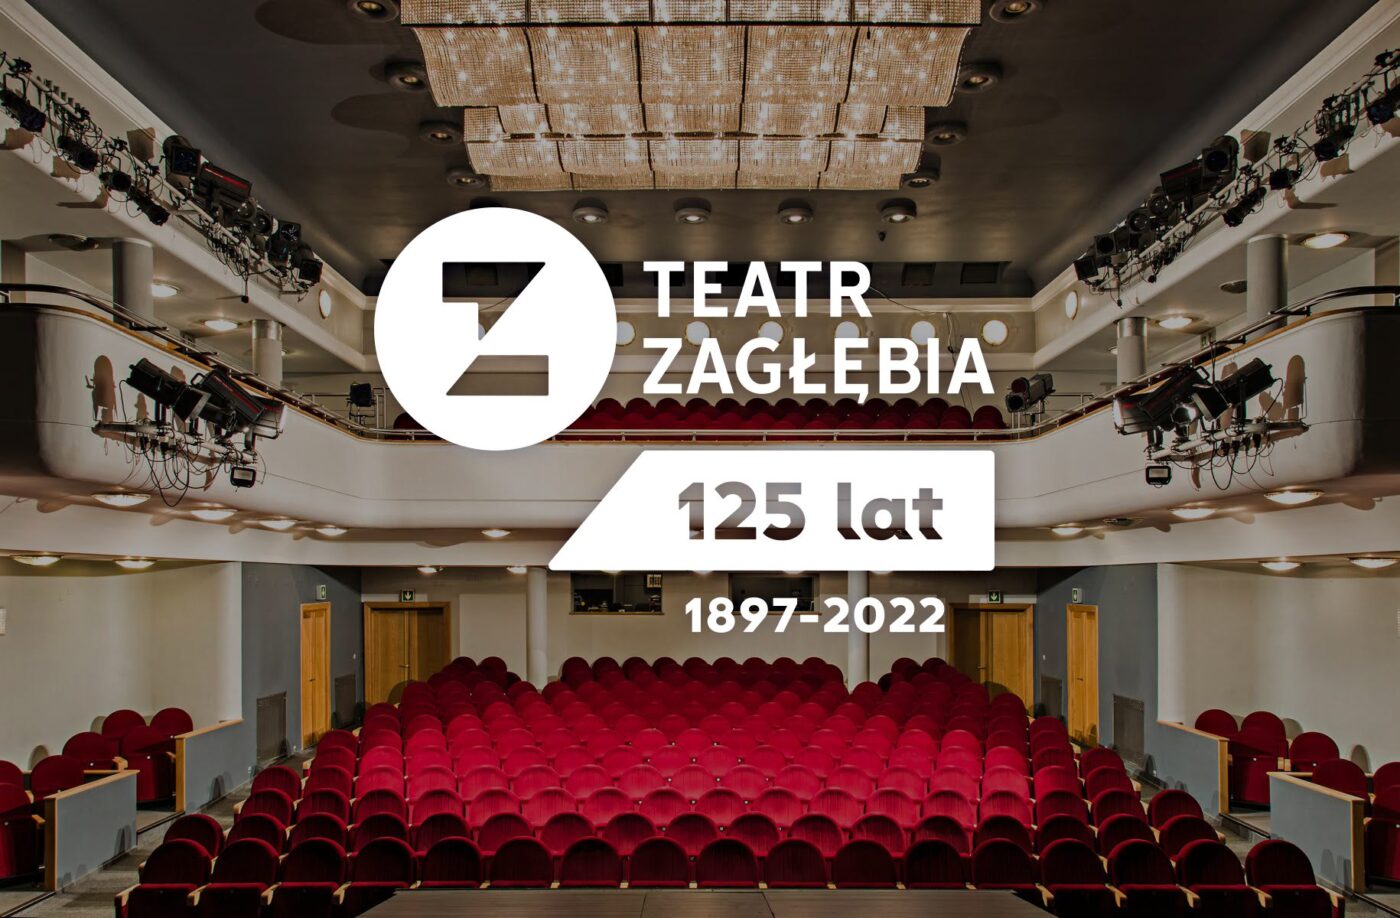 Jubileuszowe logo Teatru Zagłębia - sto dwadzieścia pięć lat, na tle pustej widowni z czerwonymi fotelami.